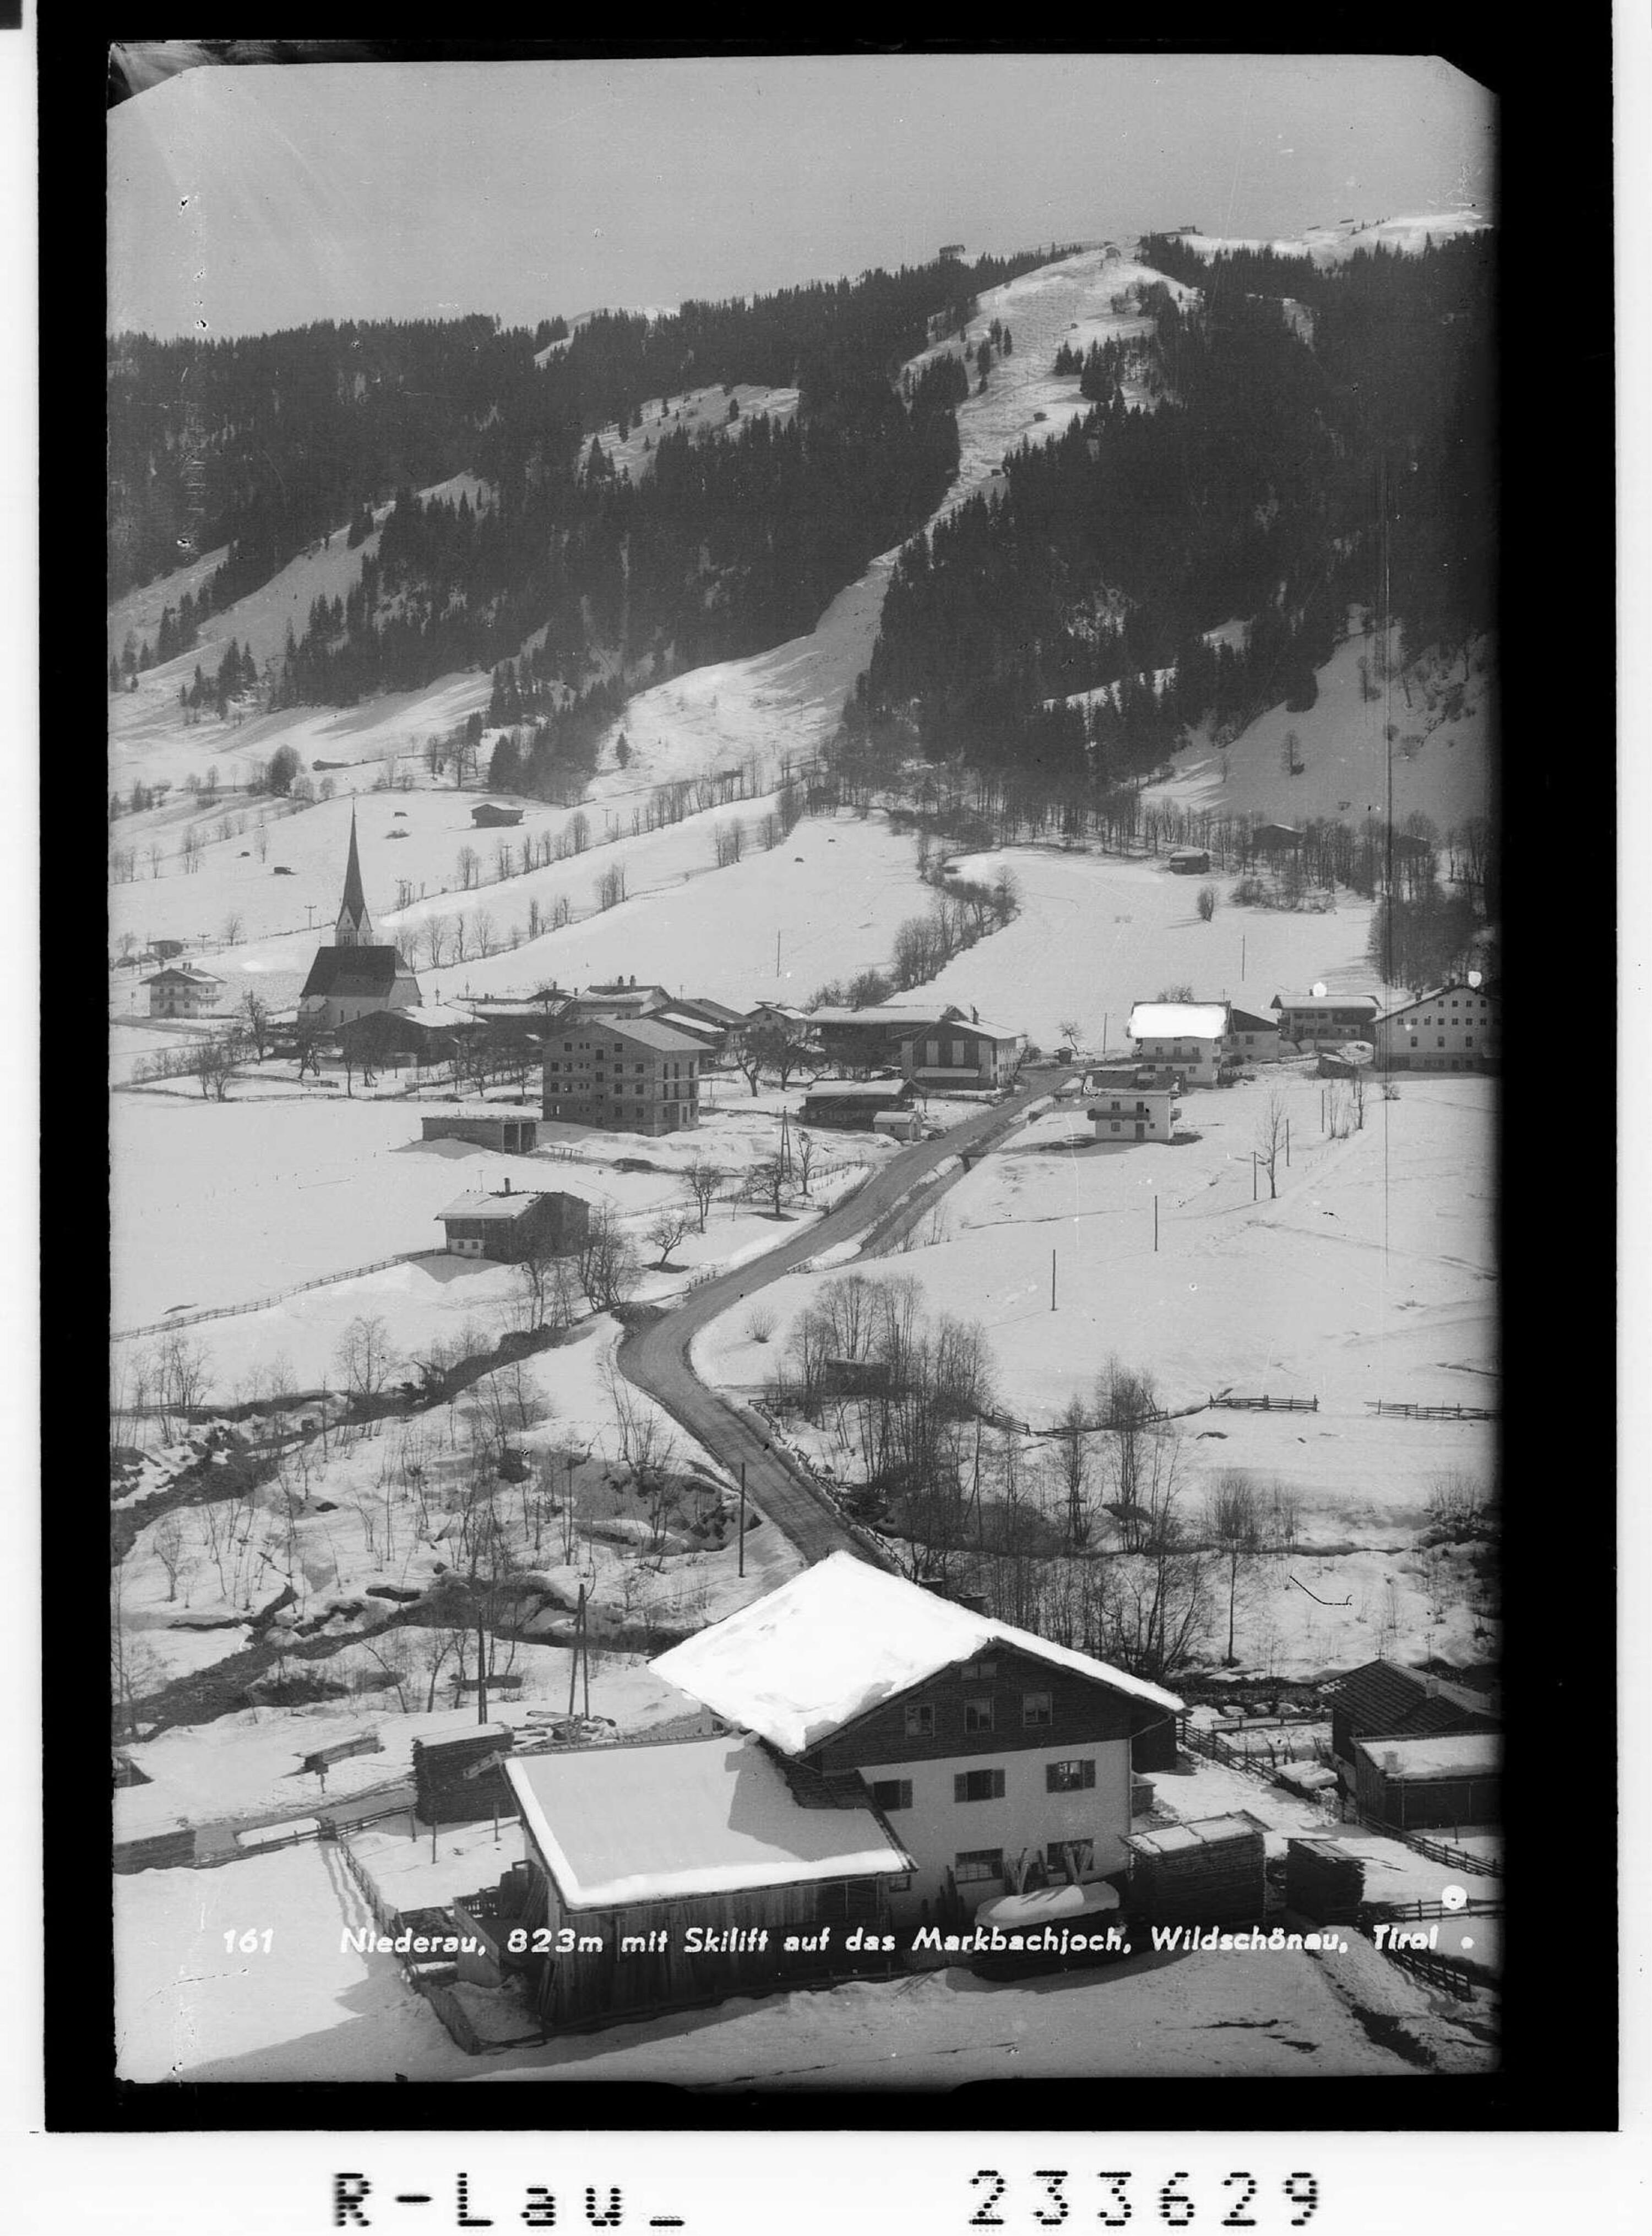 Niederau, 823 m, mit Skilift auf das Markbachjoch, Wildschönau, Tirol></div>


    <hr>
    <div class=